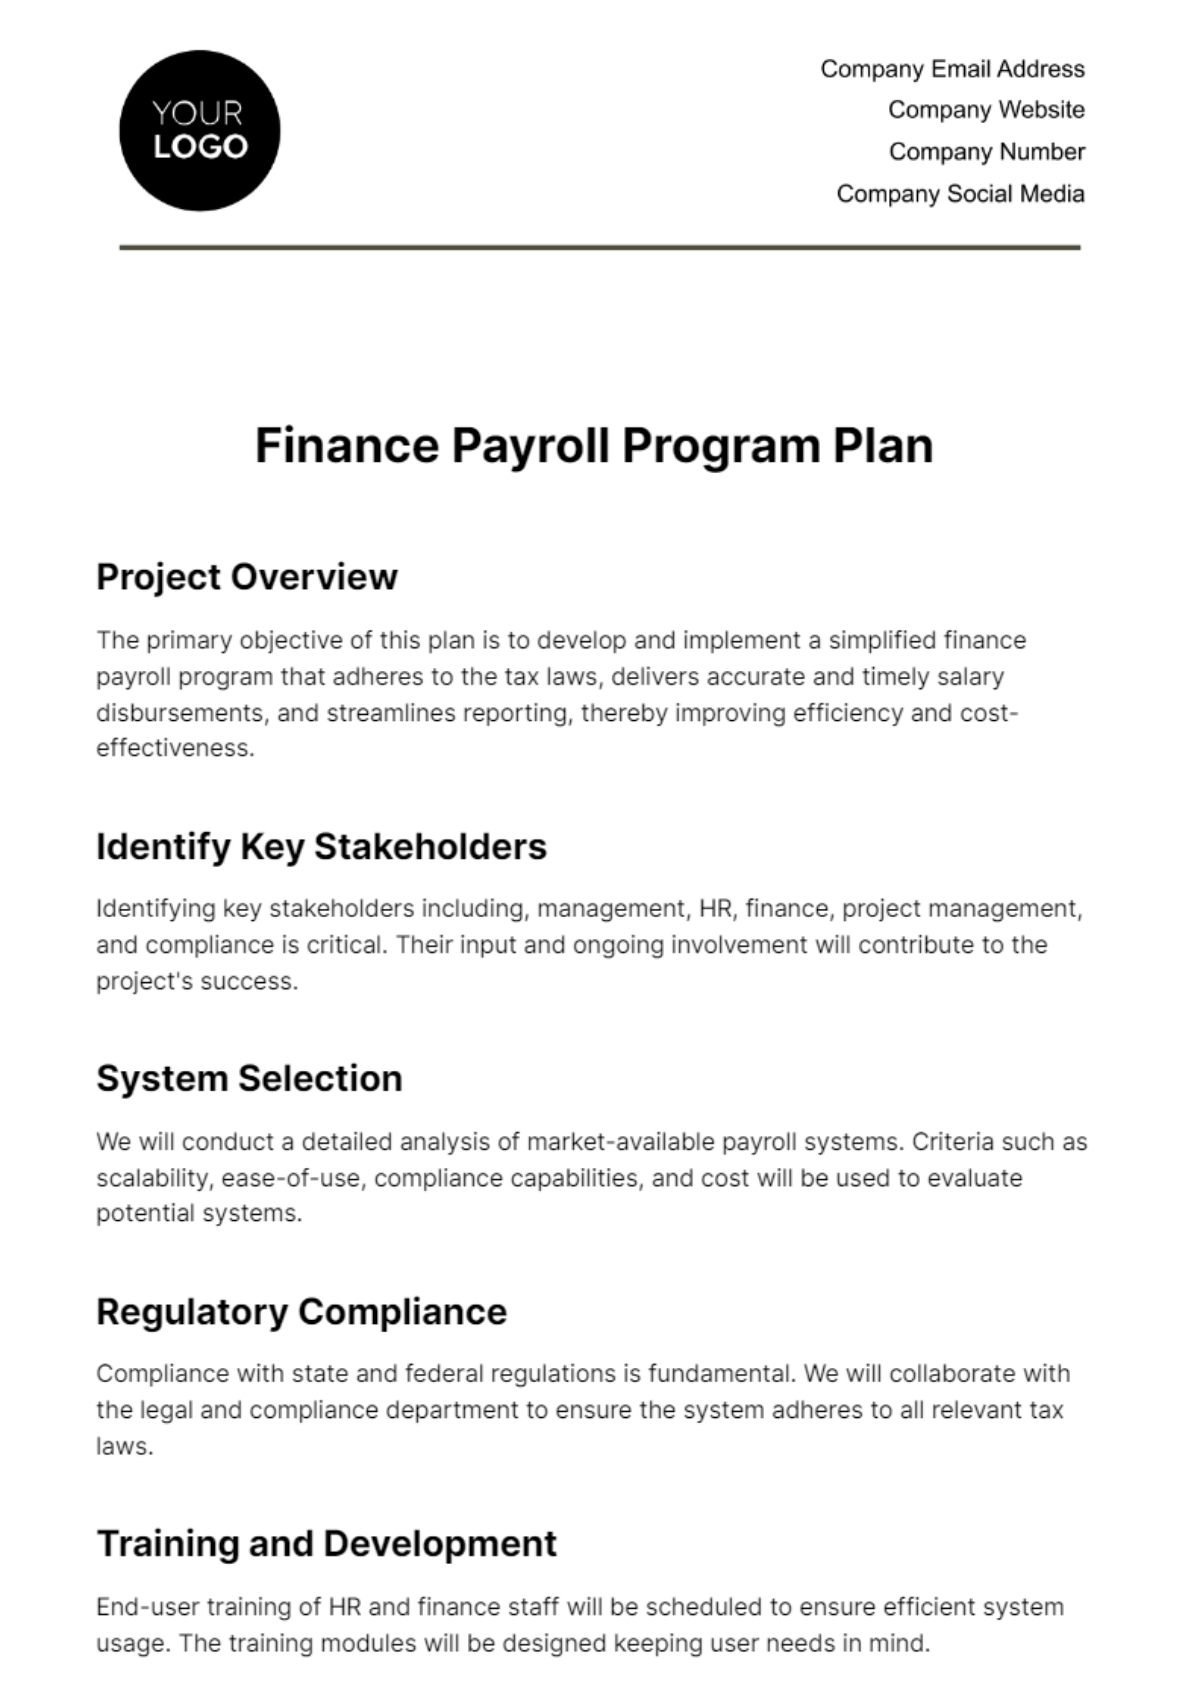 Finance Payroll Program Plan Template